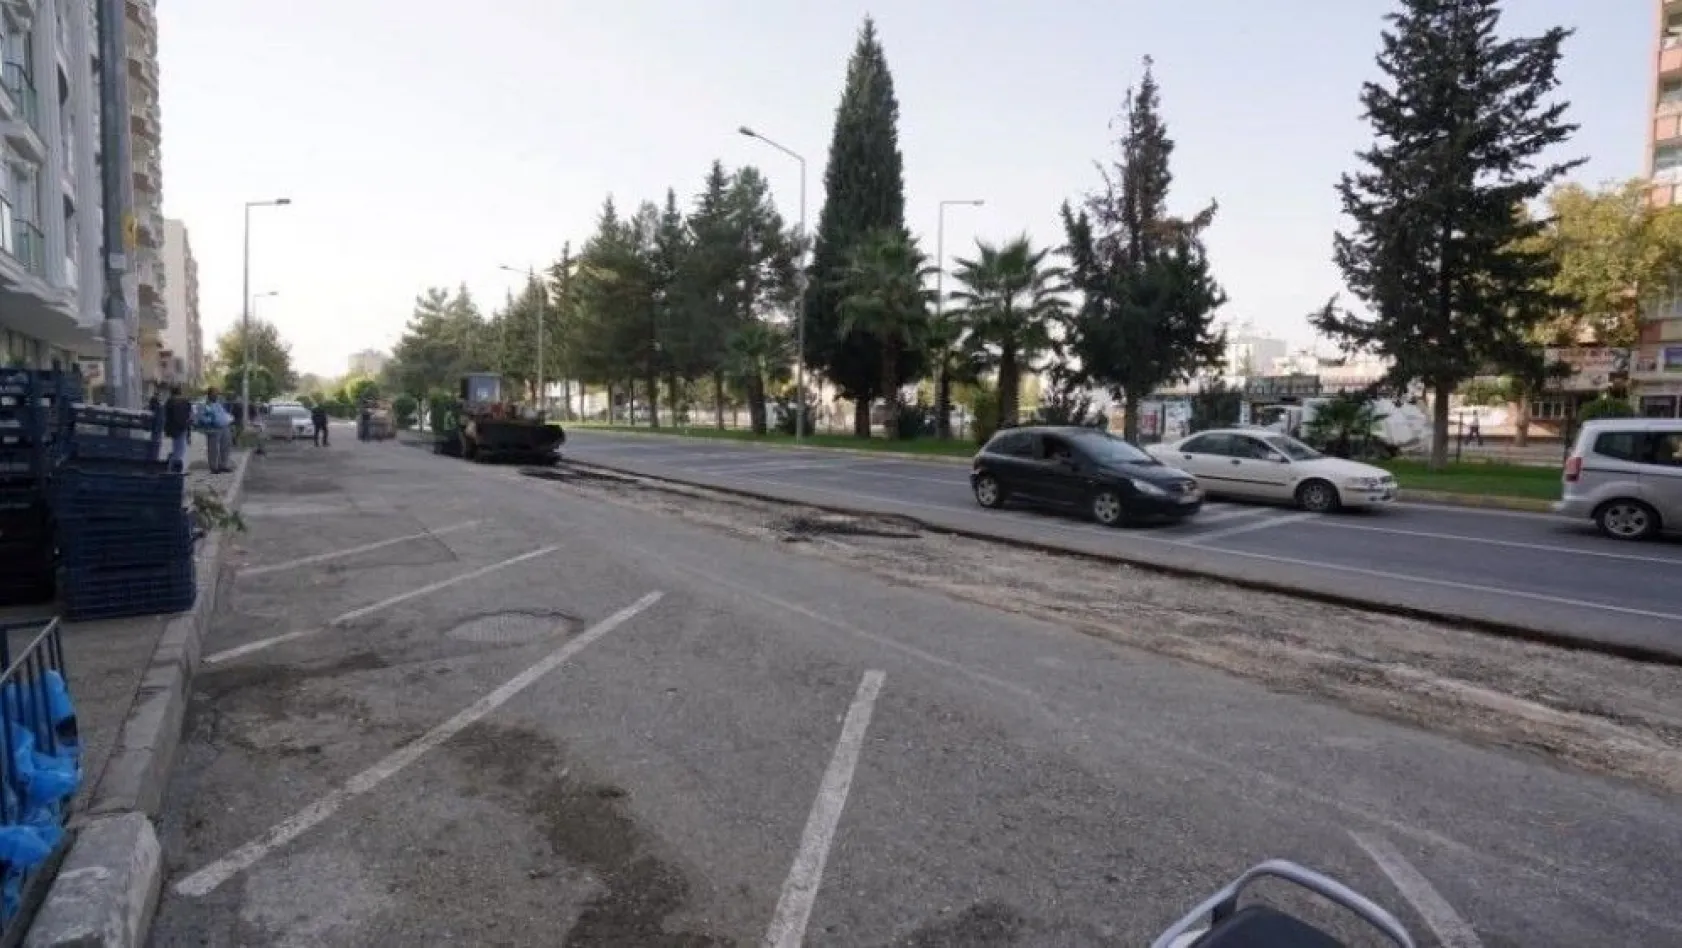 Adıyaman Belediyesi Atatürk Bulvarında yol genişletme çalışması yaptı
